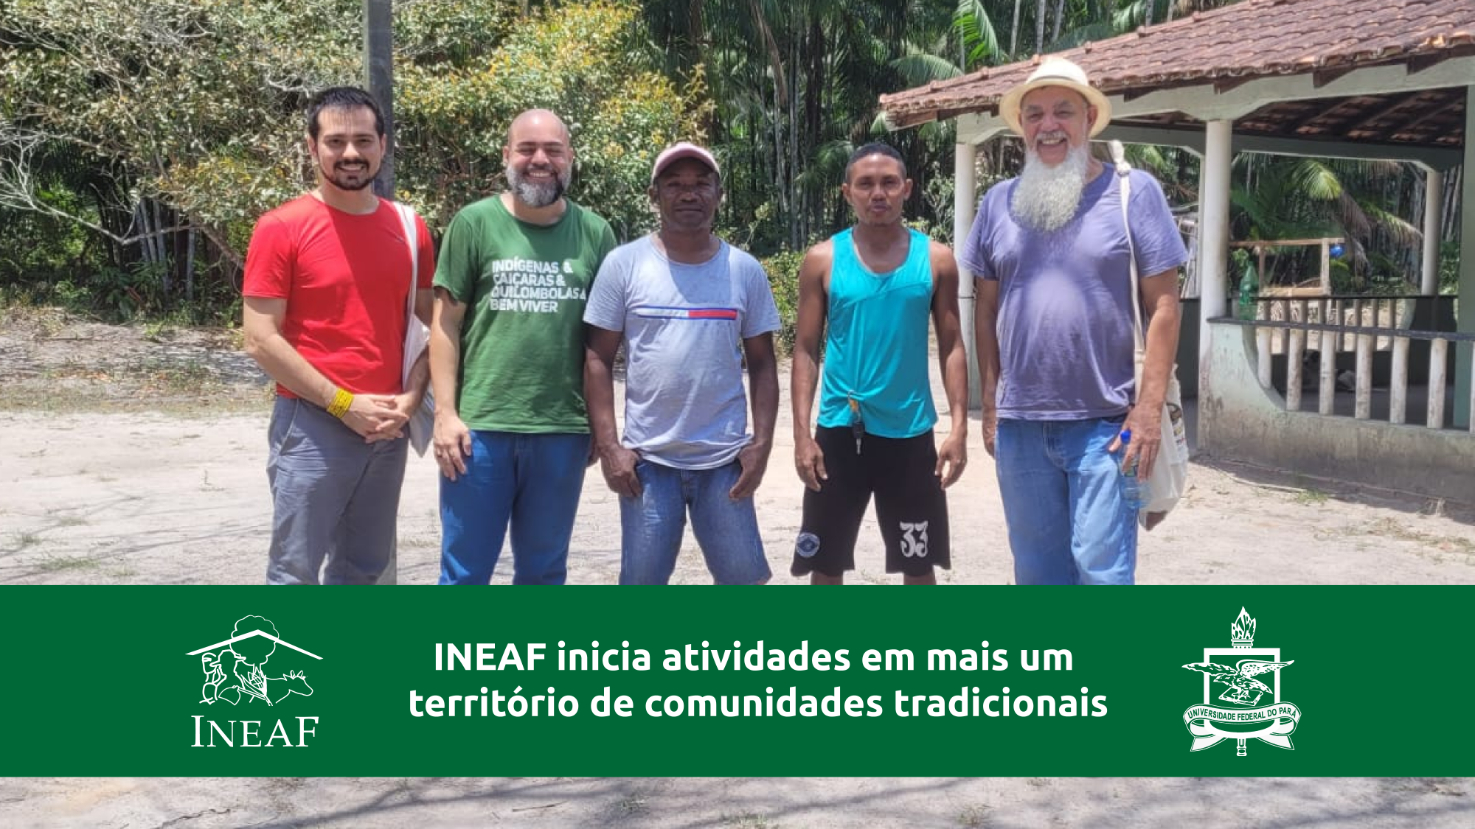 INEAF inicia atividades em mais um território de comunidades tradicionais